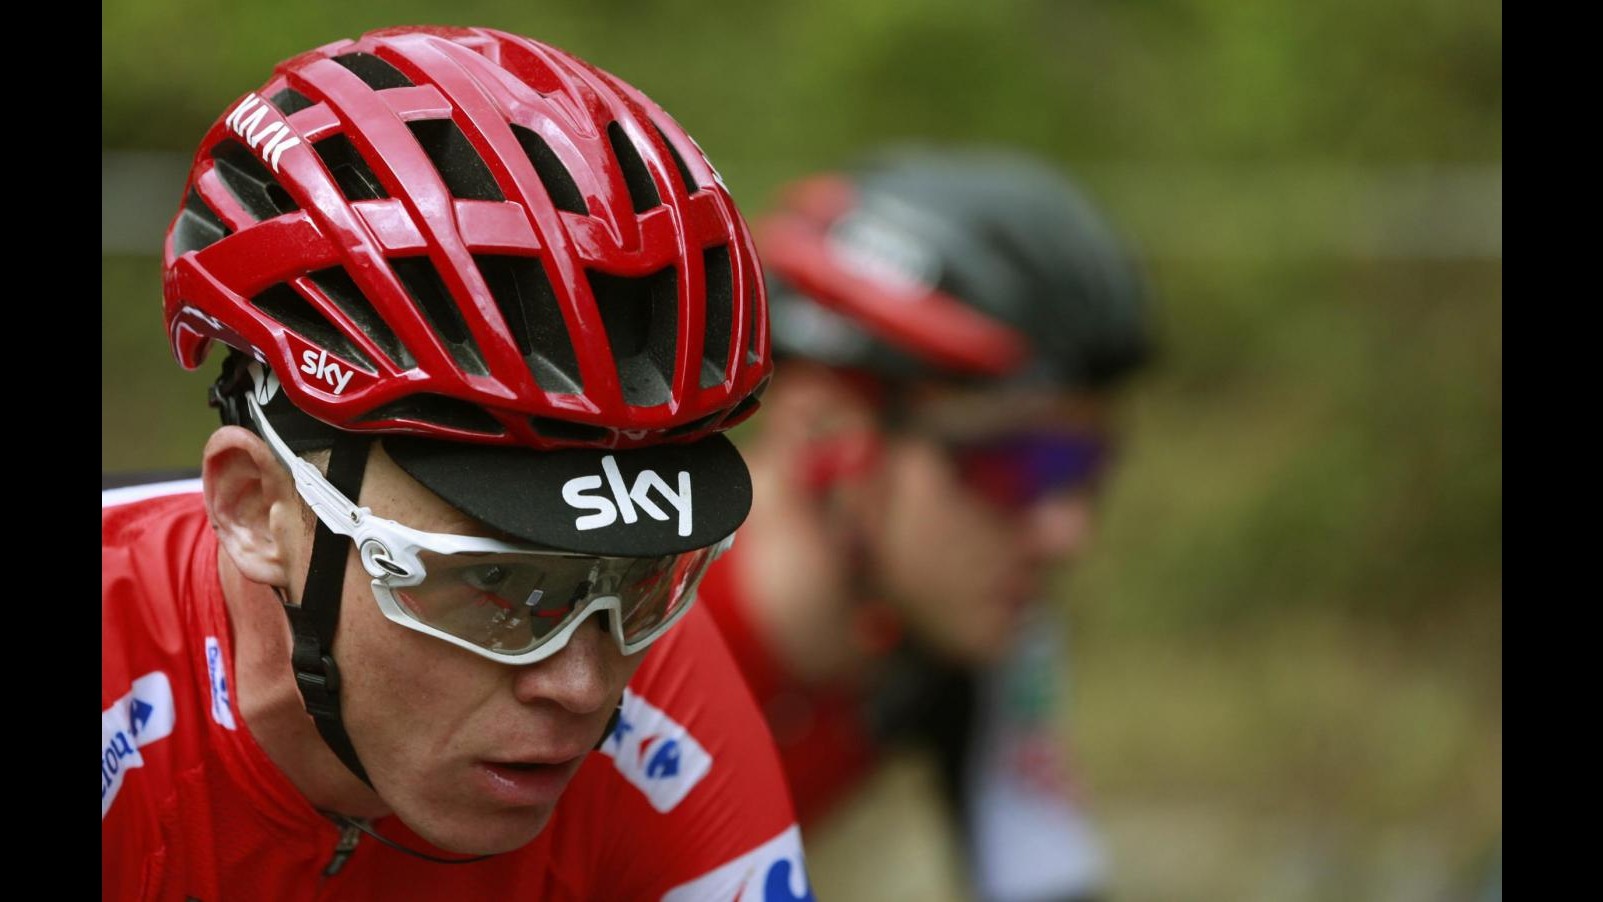 Ciclismo, Froome fa sua anche la Vuelta. Giro non è più utopia